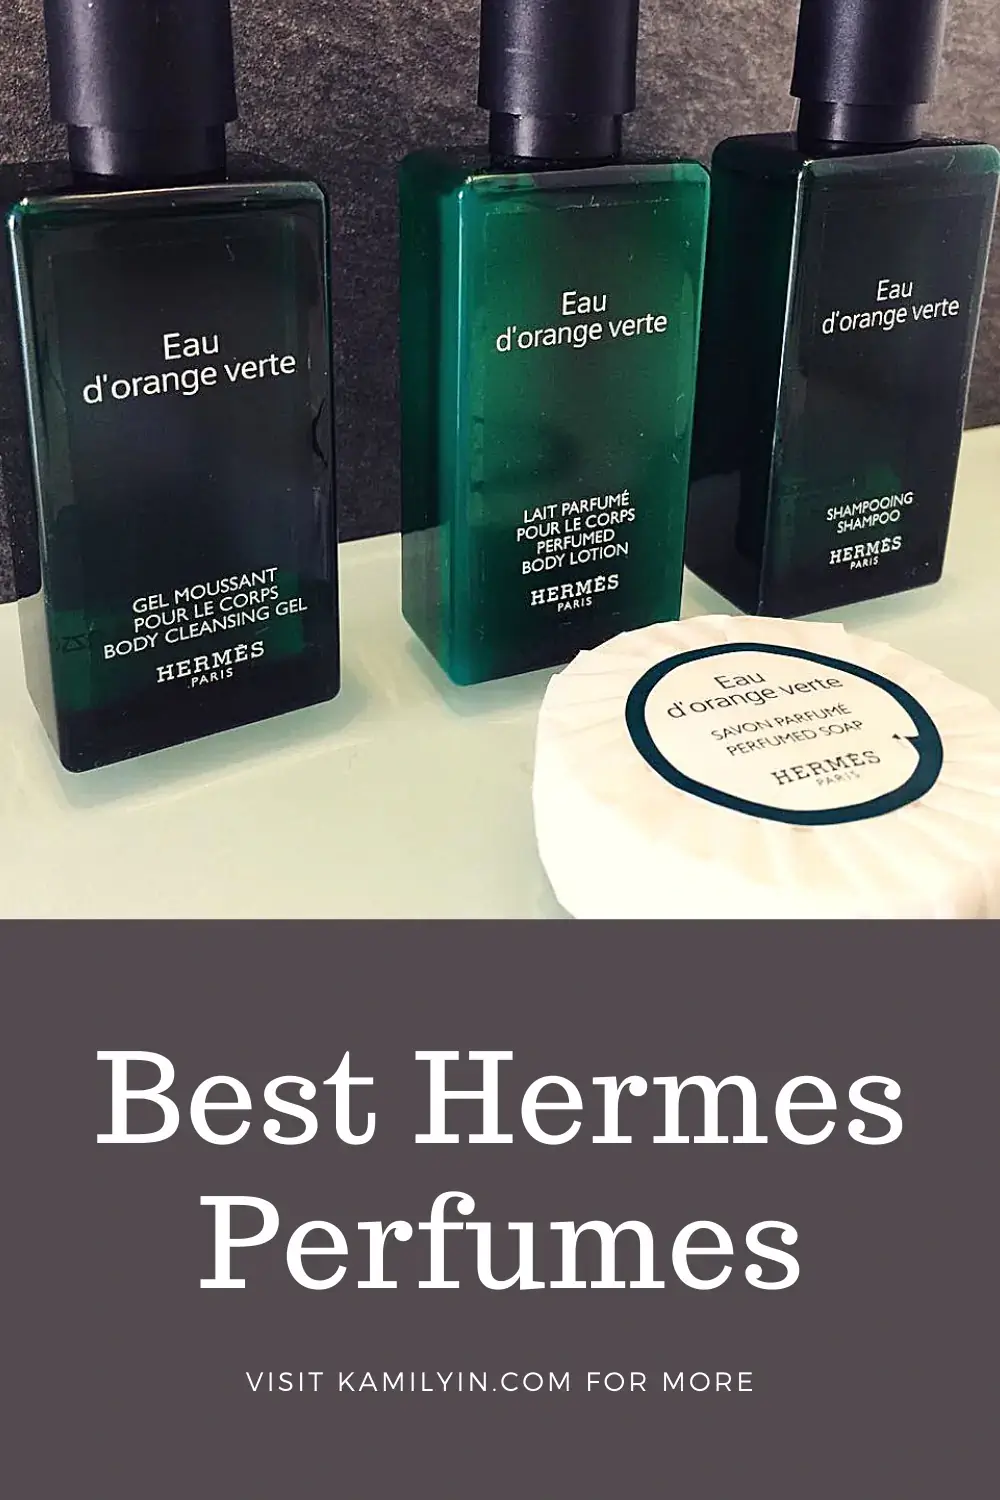 Best Hermes Perfume Reviews